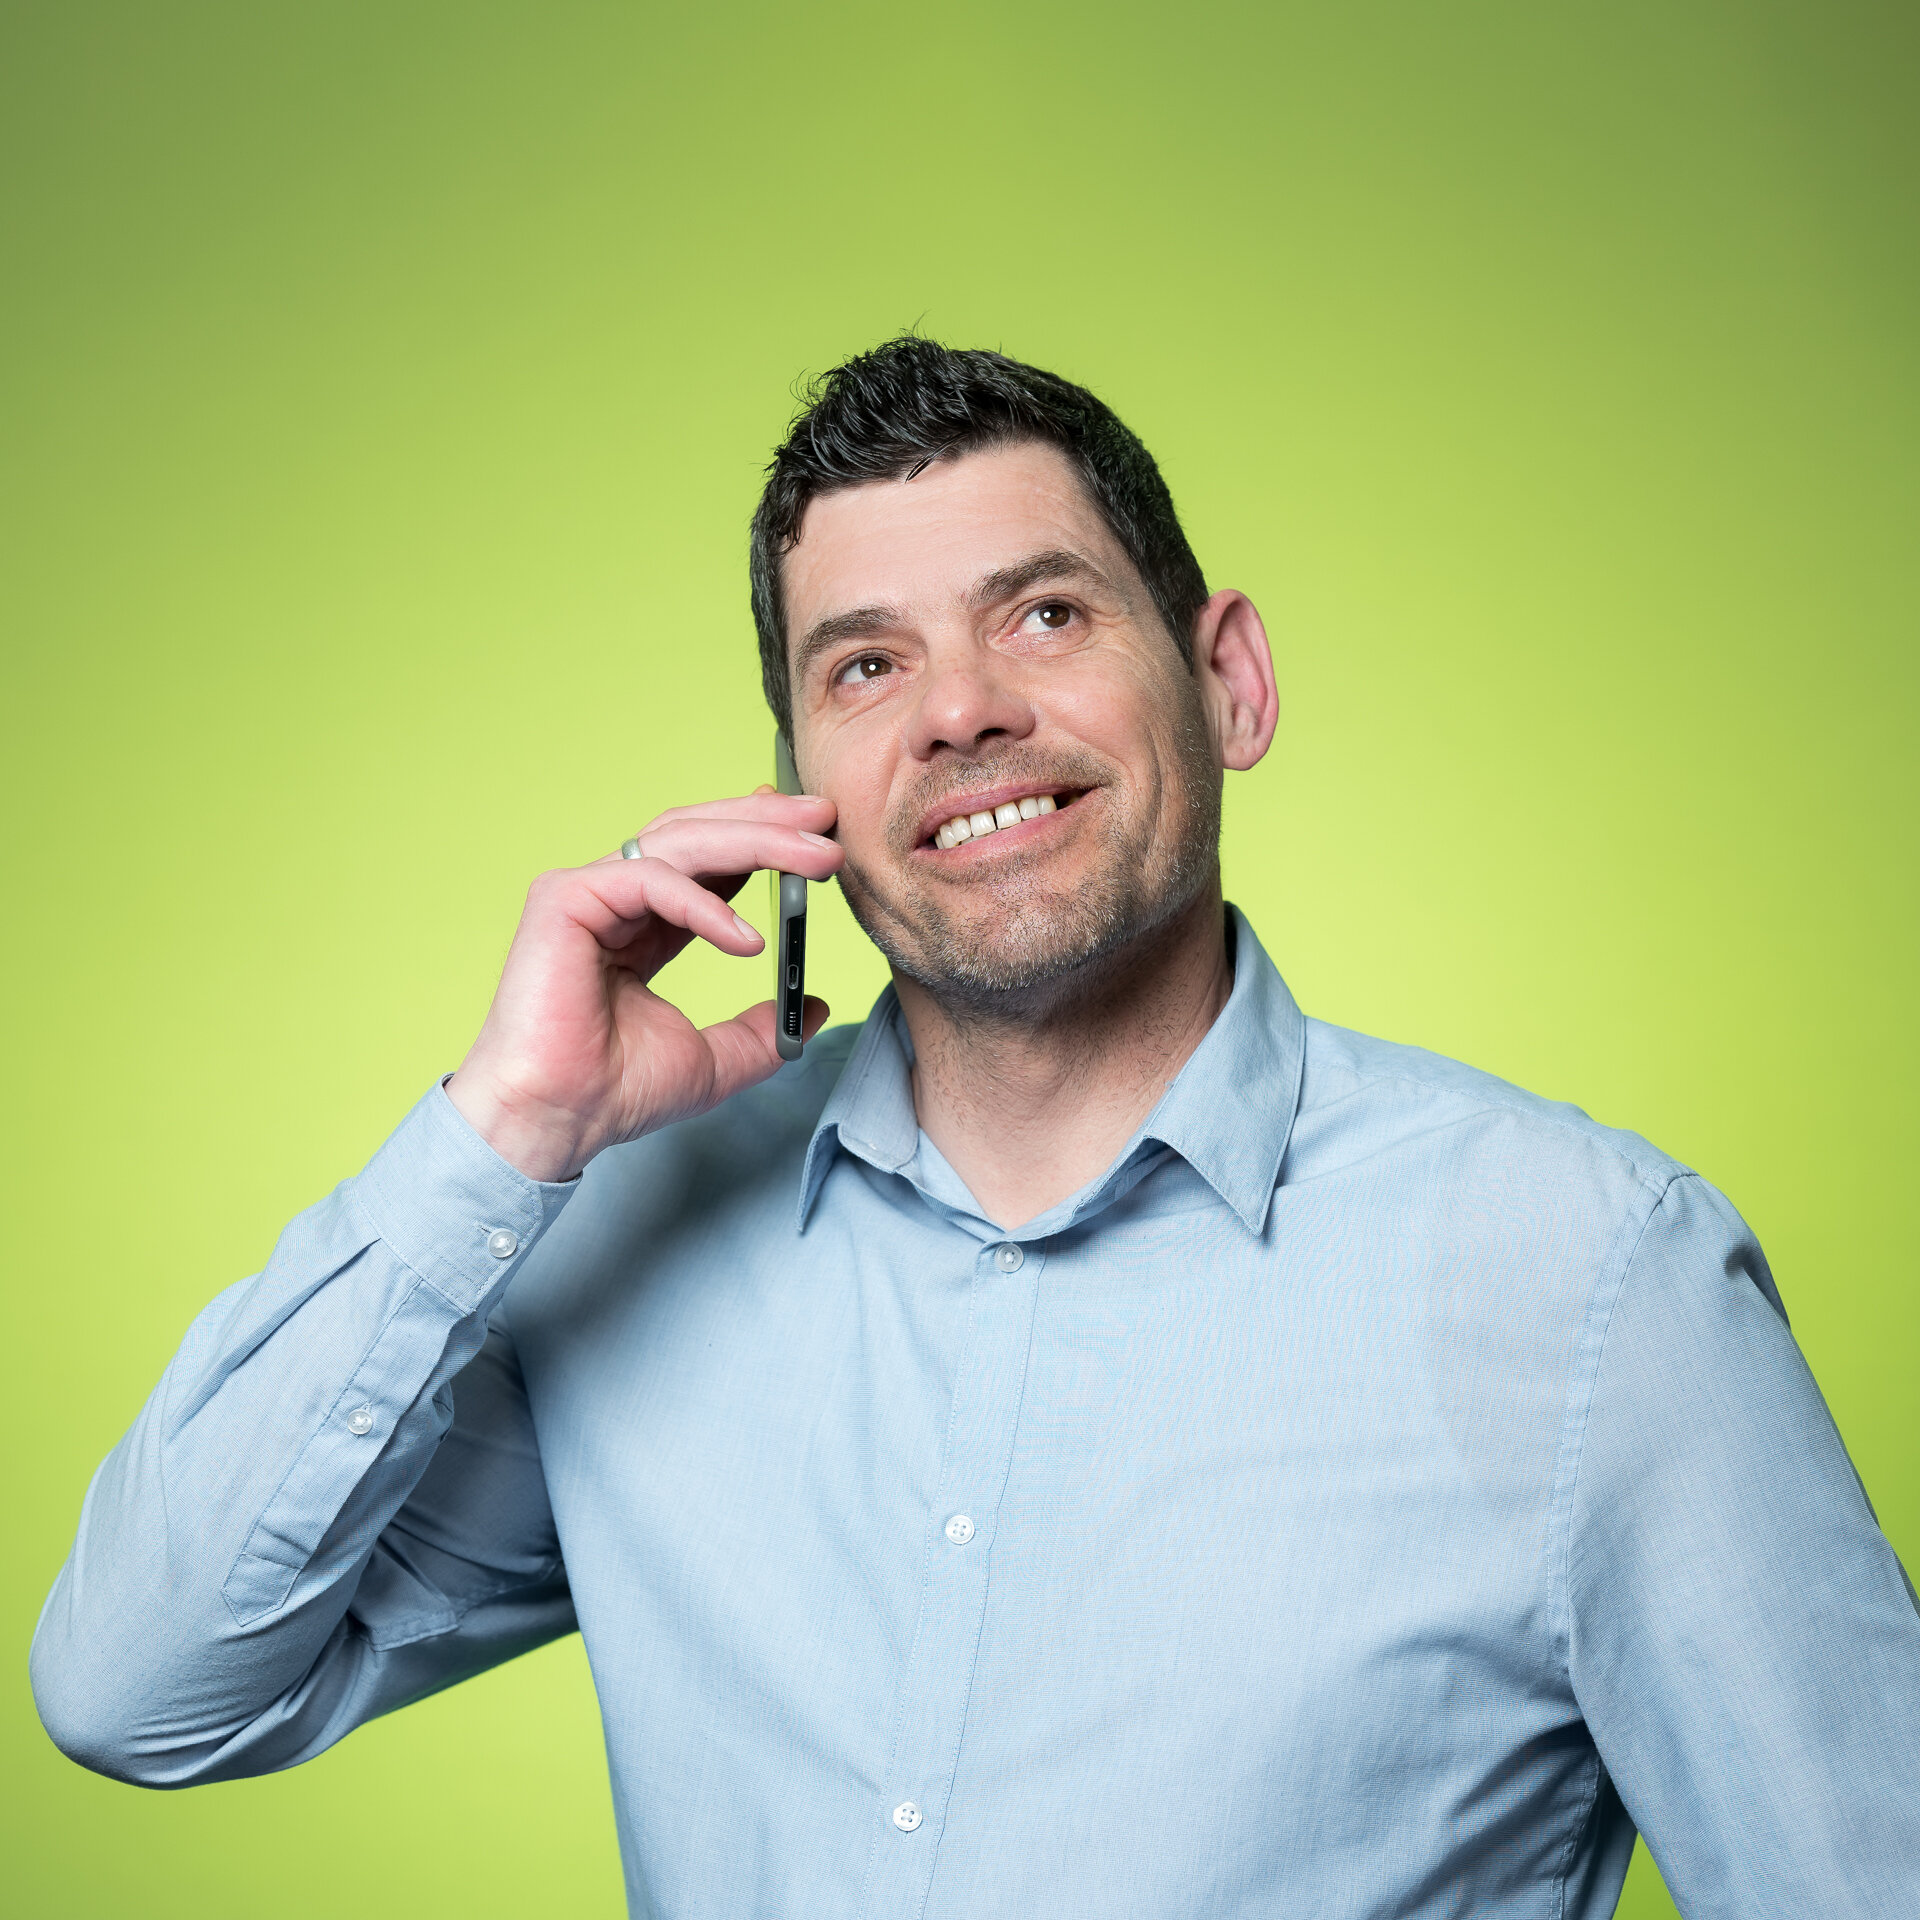 Erwin Kaiser telefoniert mit Handy am Ohr und schaut dabei lächelnd nach oben. | © Bamboo Health Care GmbH